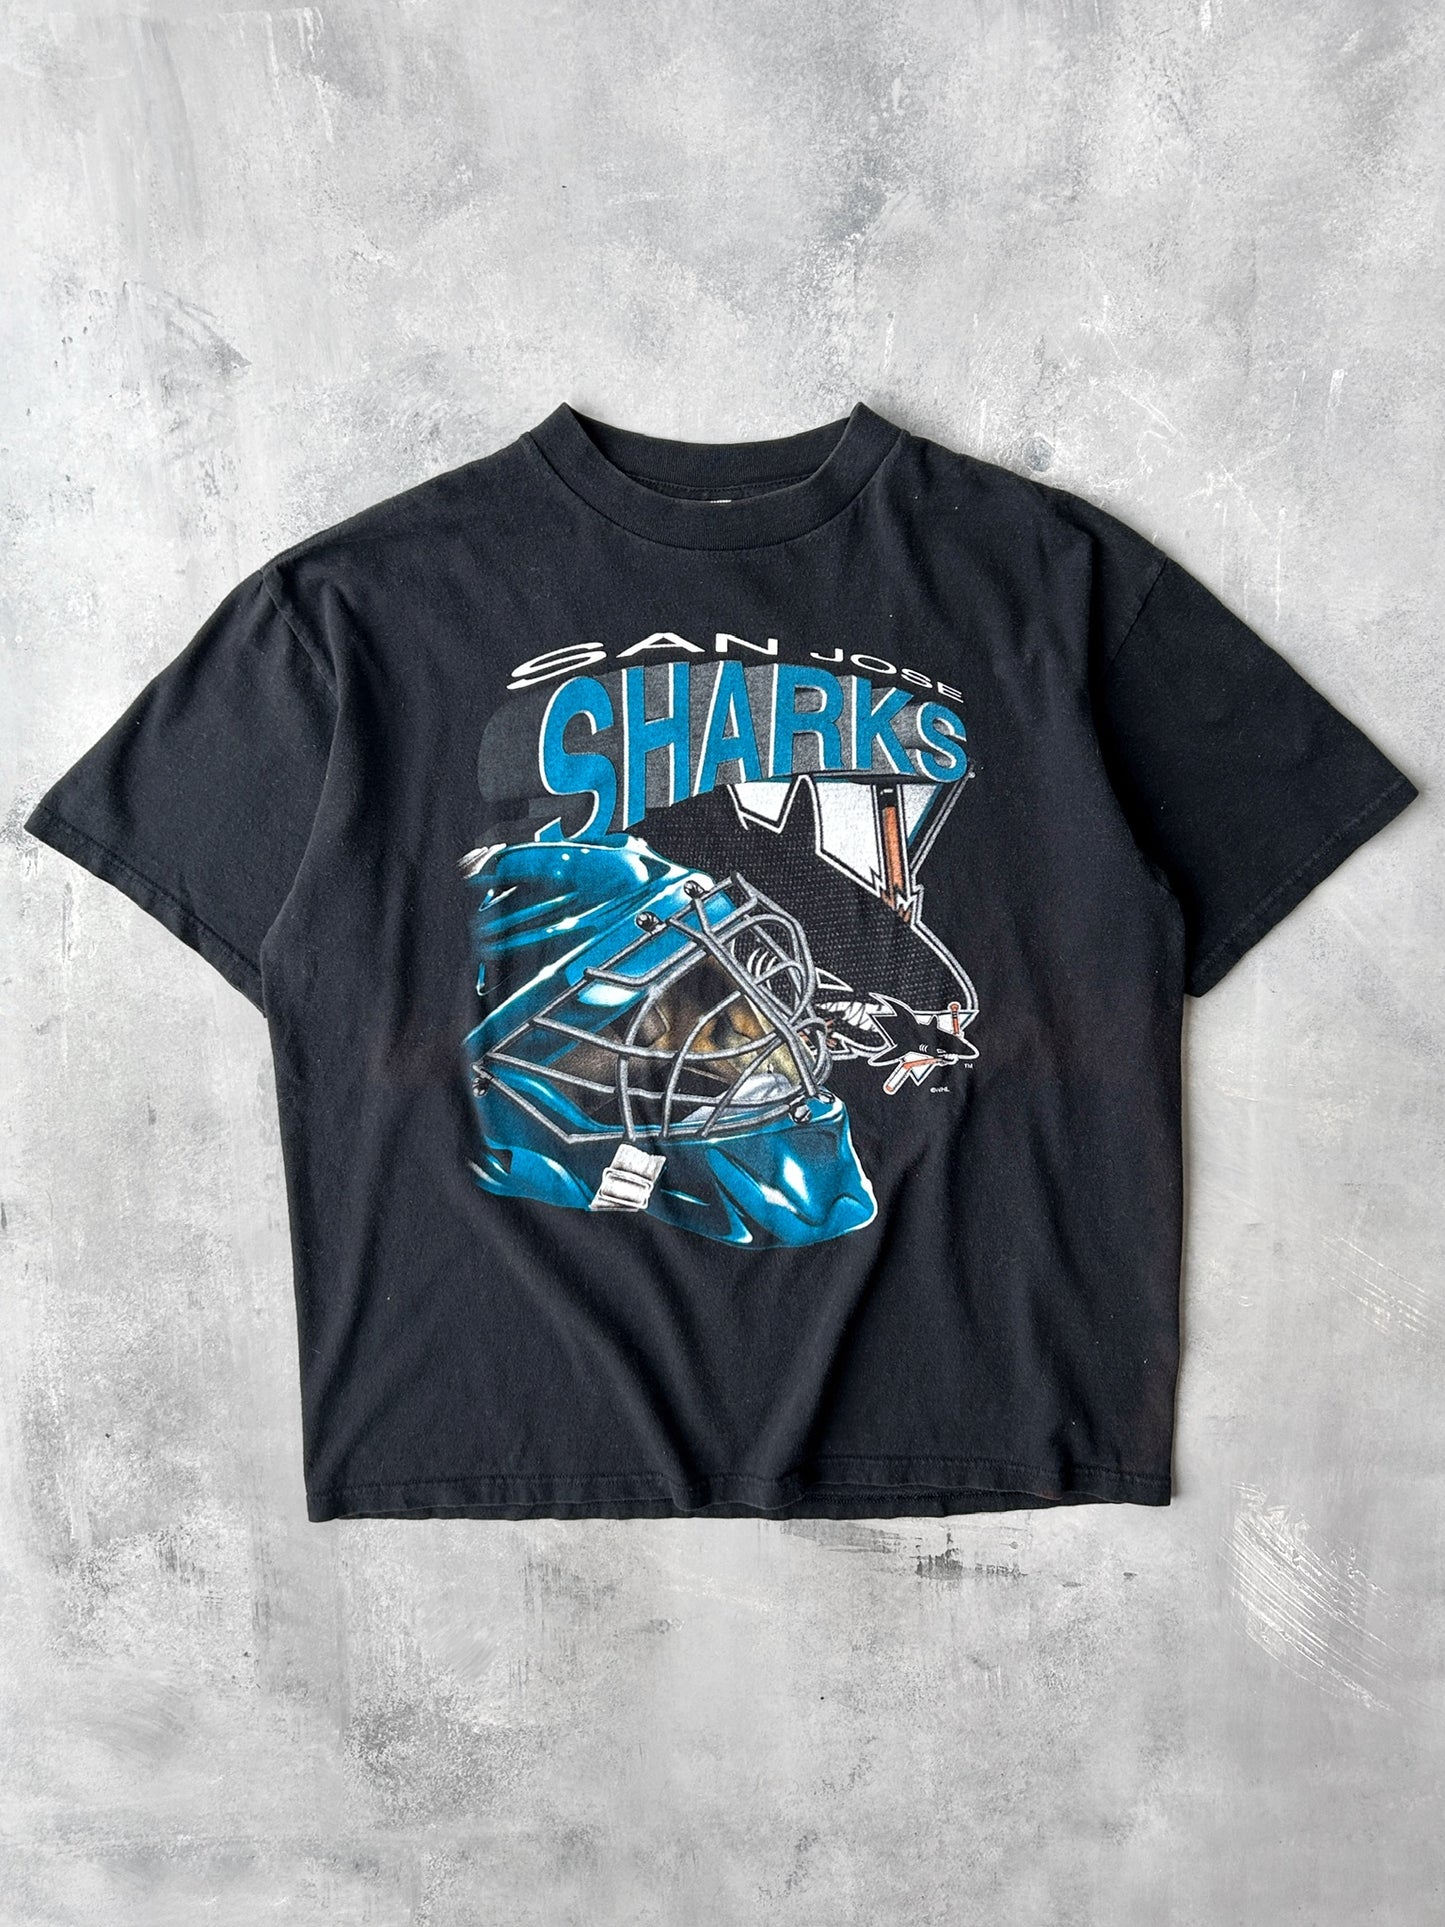 San Jose Sharks T-Shirt 90's - Large / XL